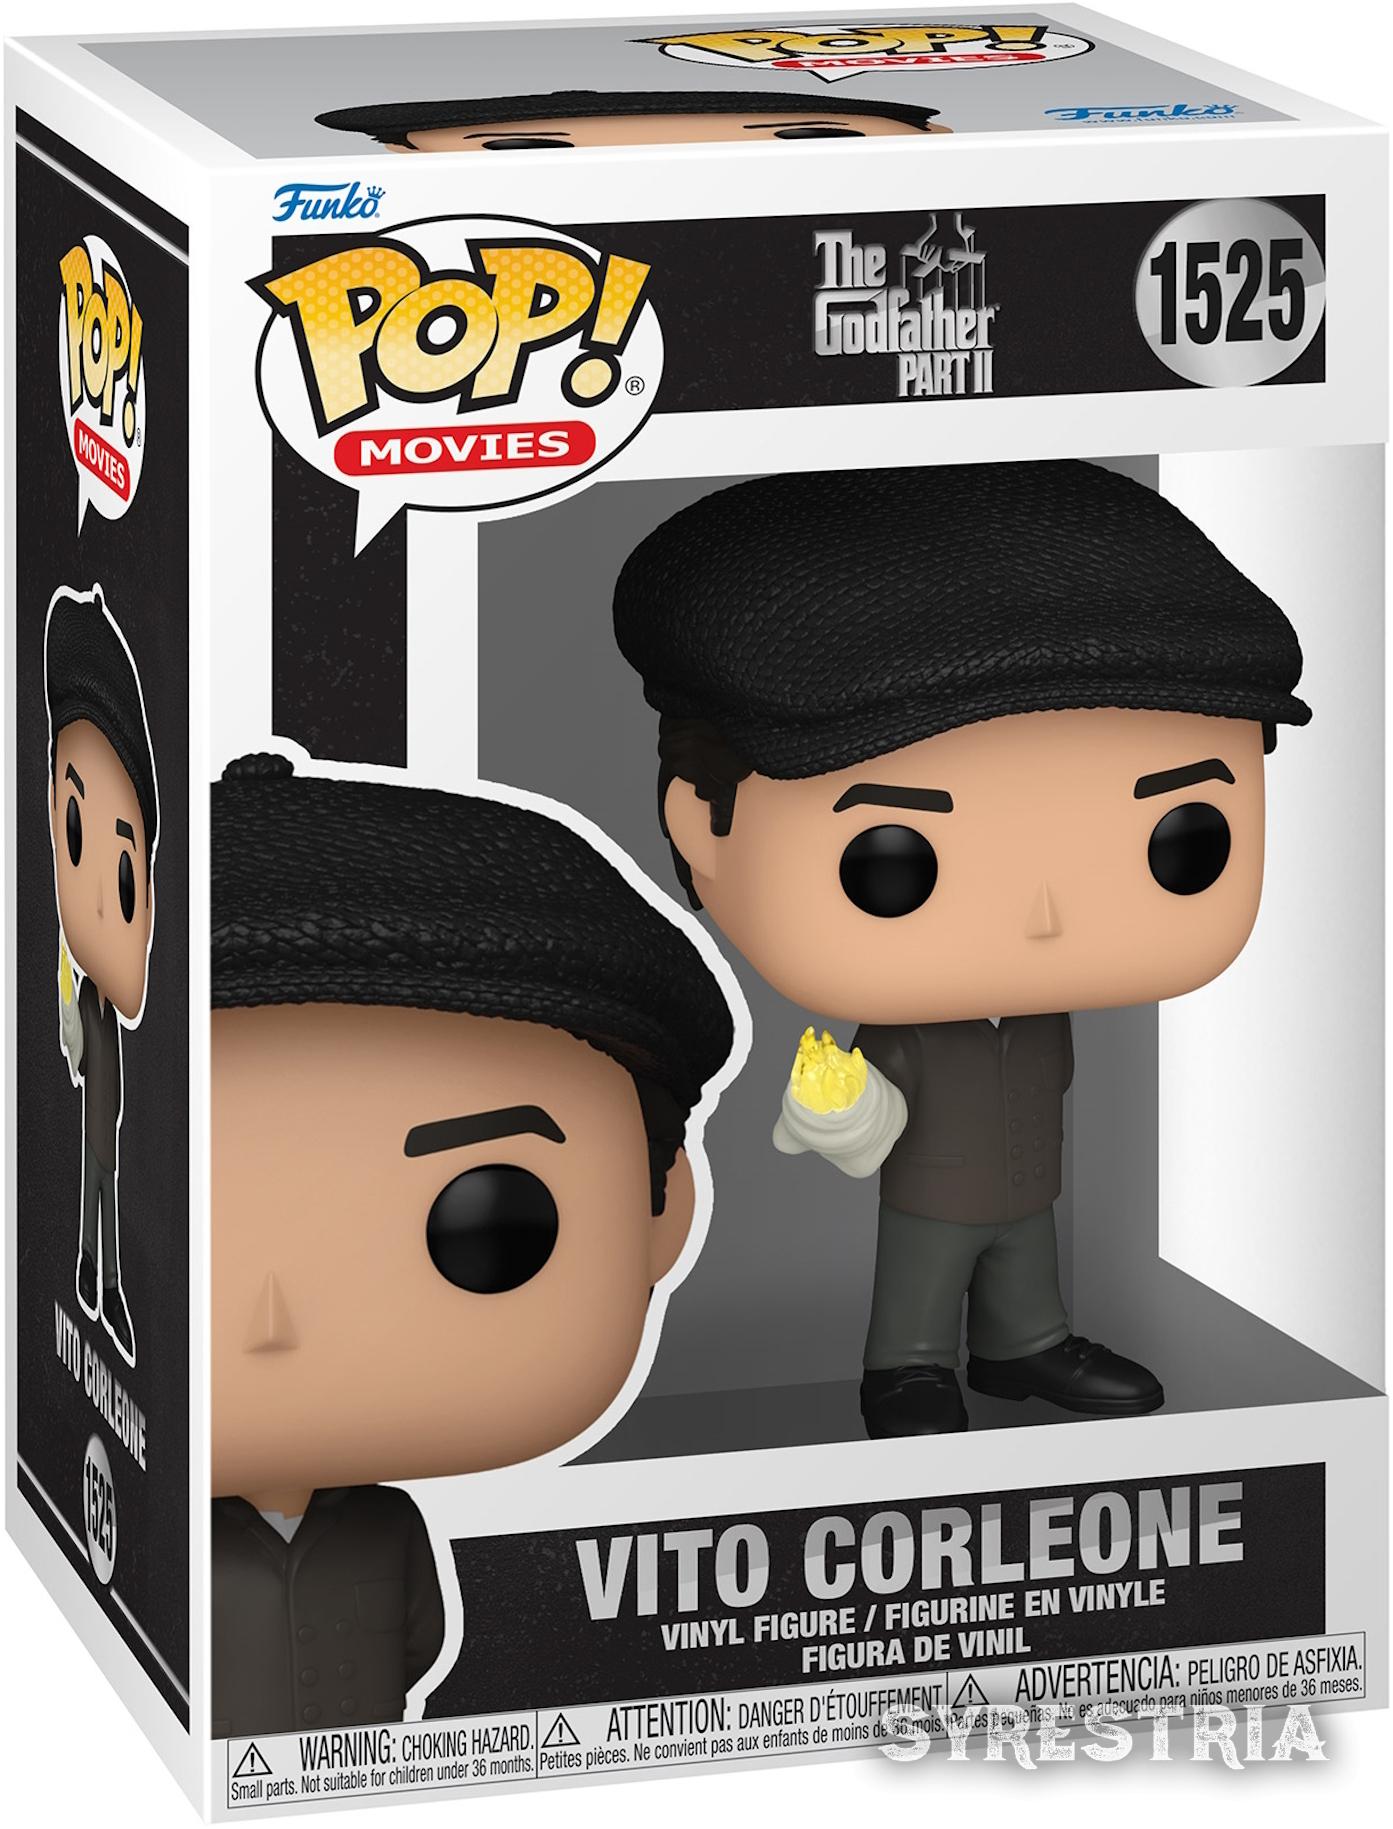 The Godfather Part 2 - Vito Corleone 1525  - Funko Pop! Vinyl Figur